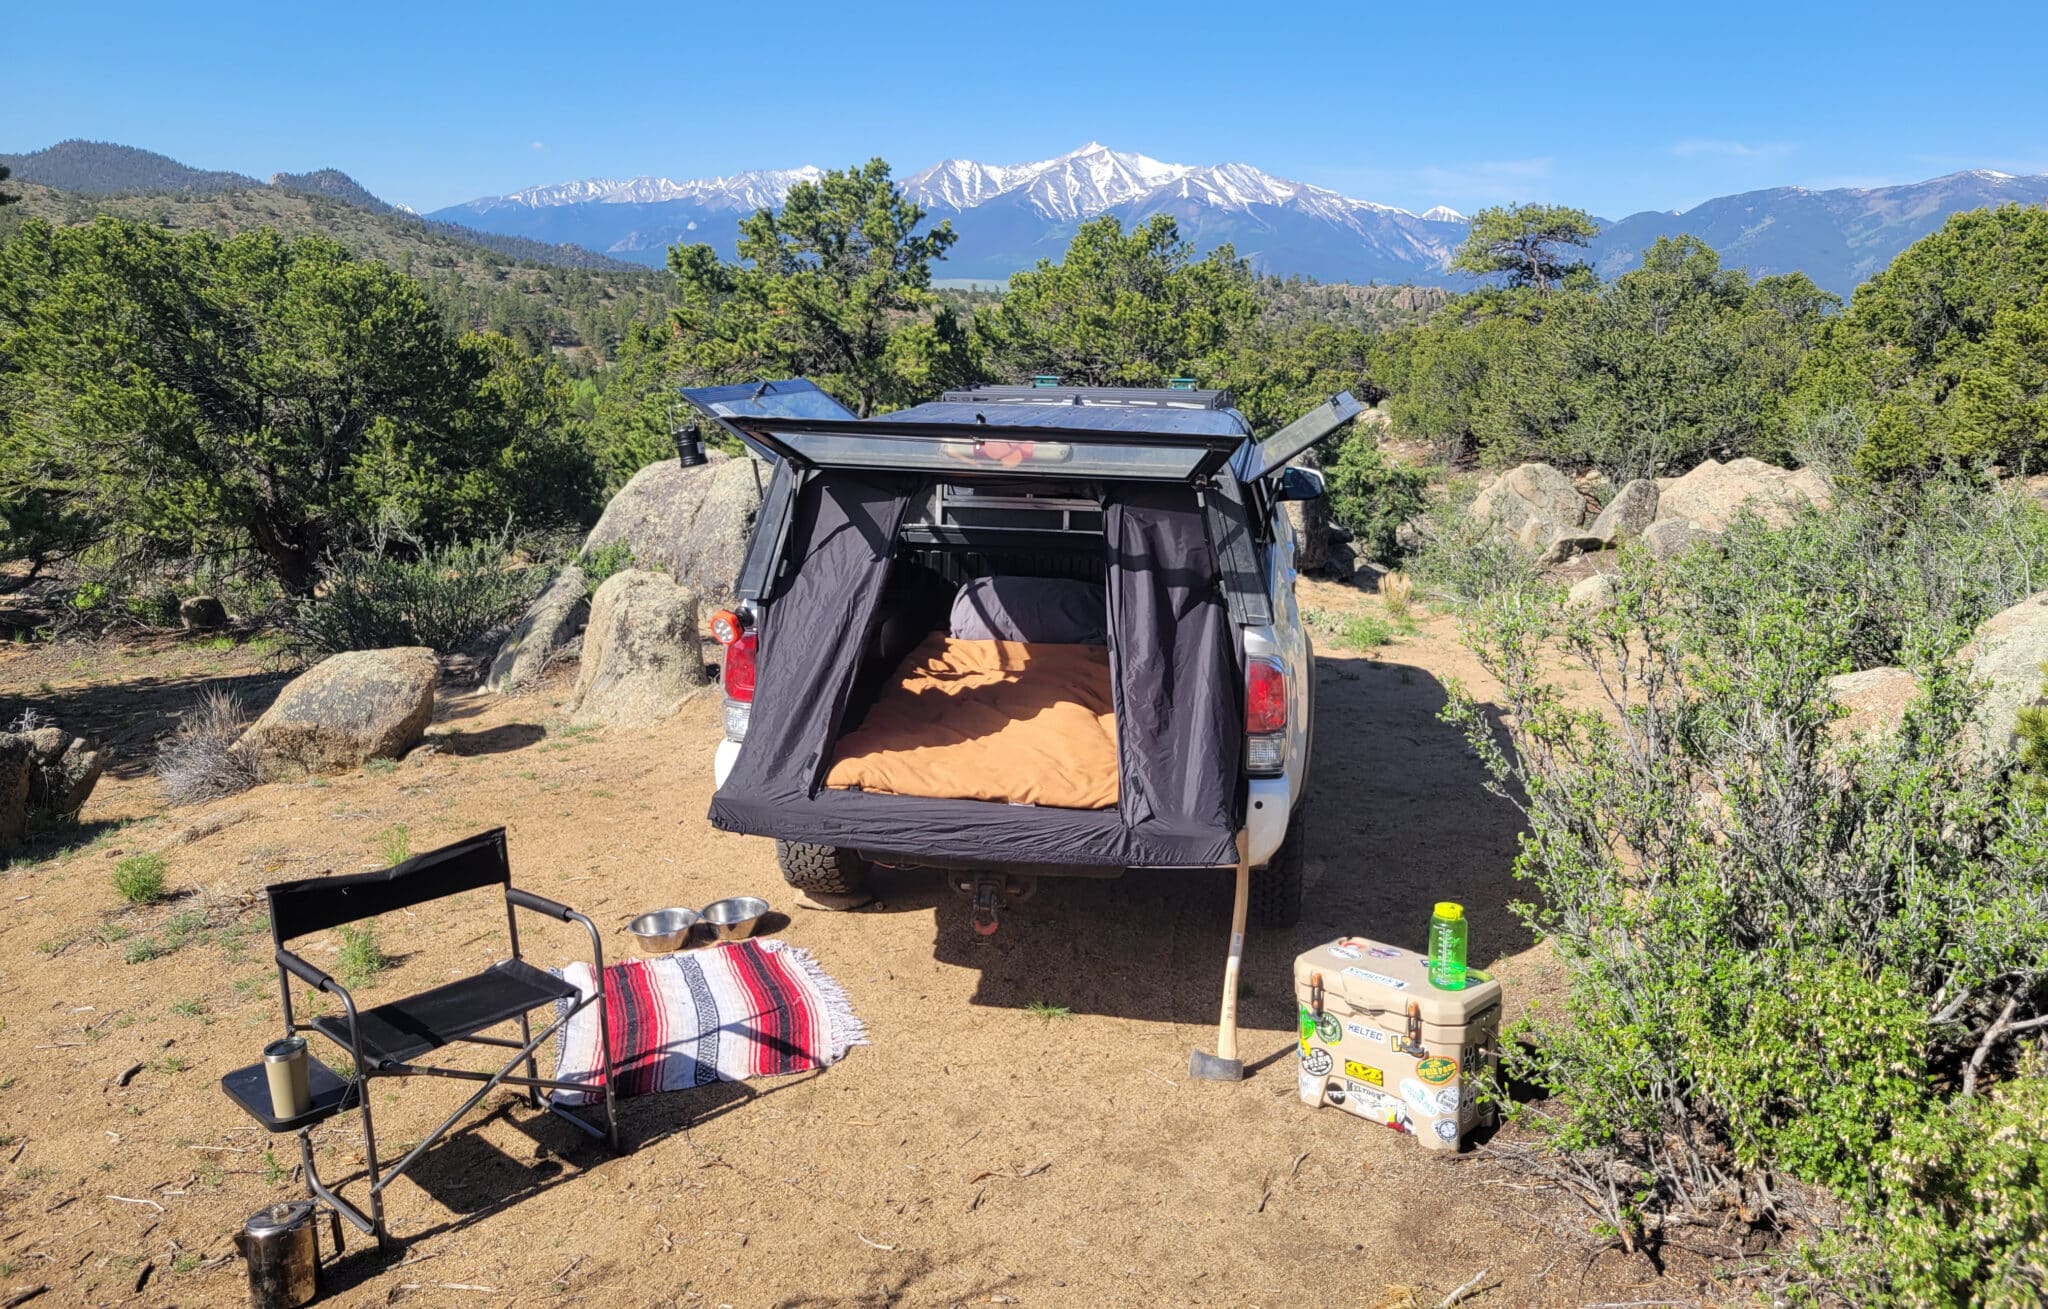 Denver tent startup raises $7K on Kickstarter